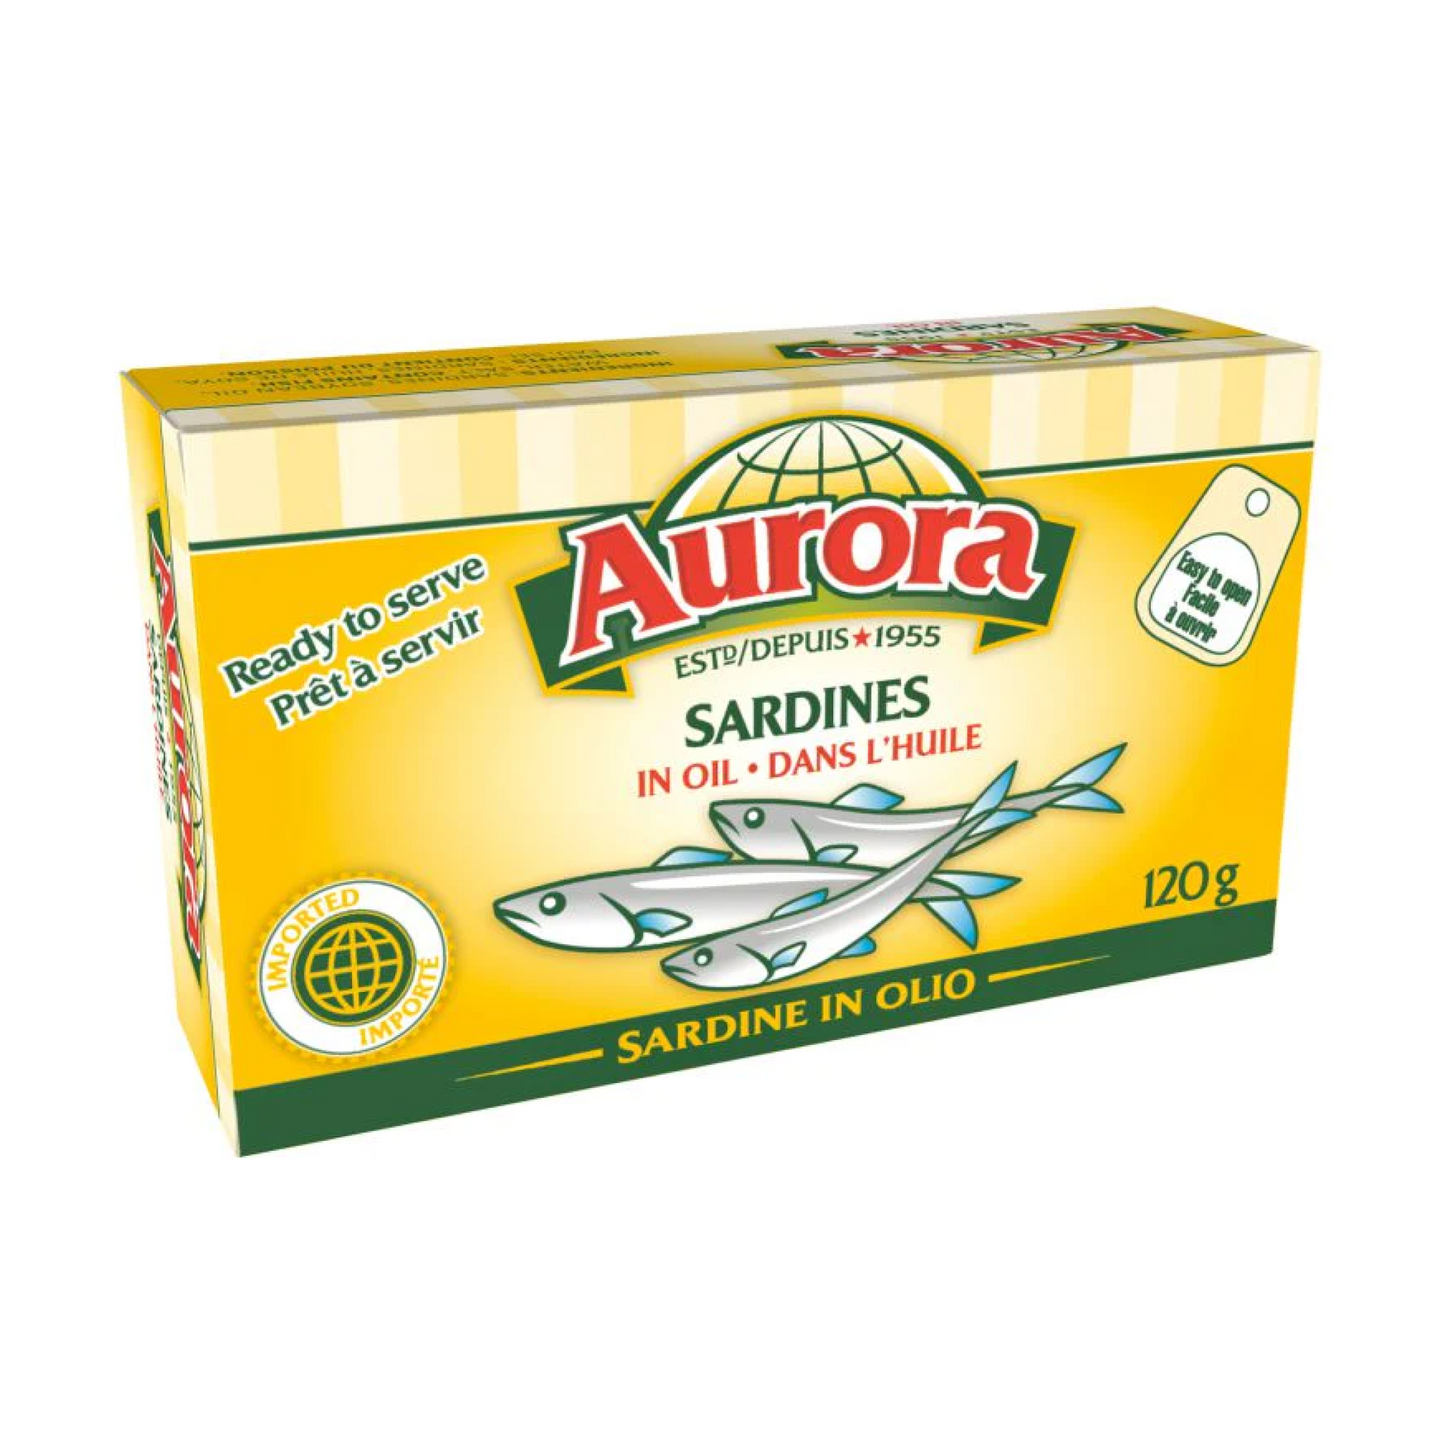 Aurora Sardines in Oil 120g